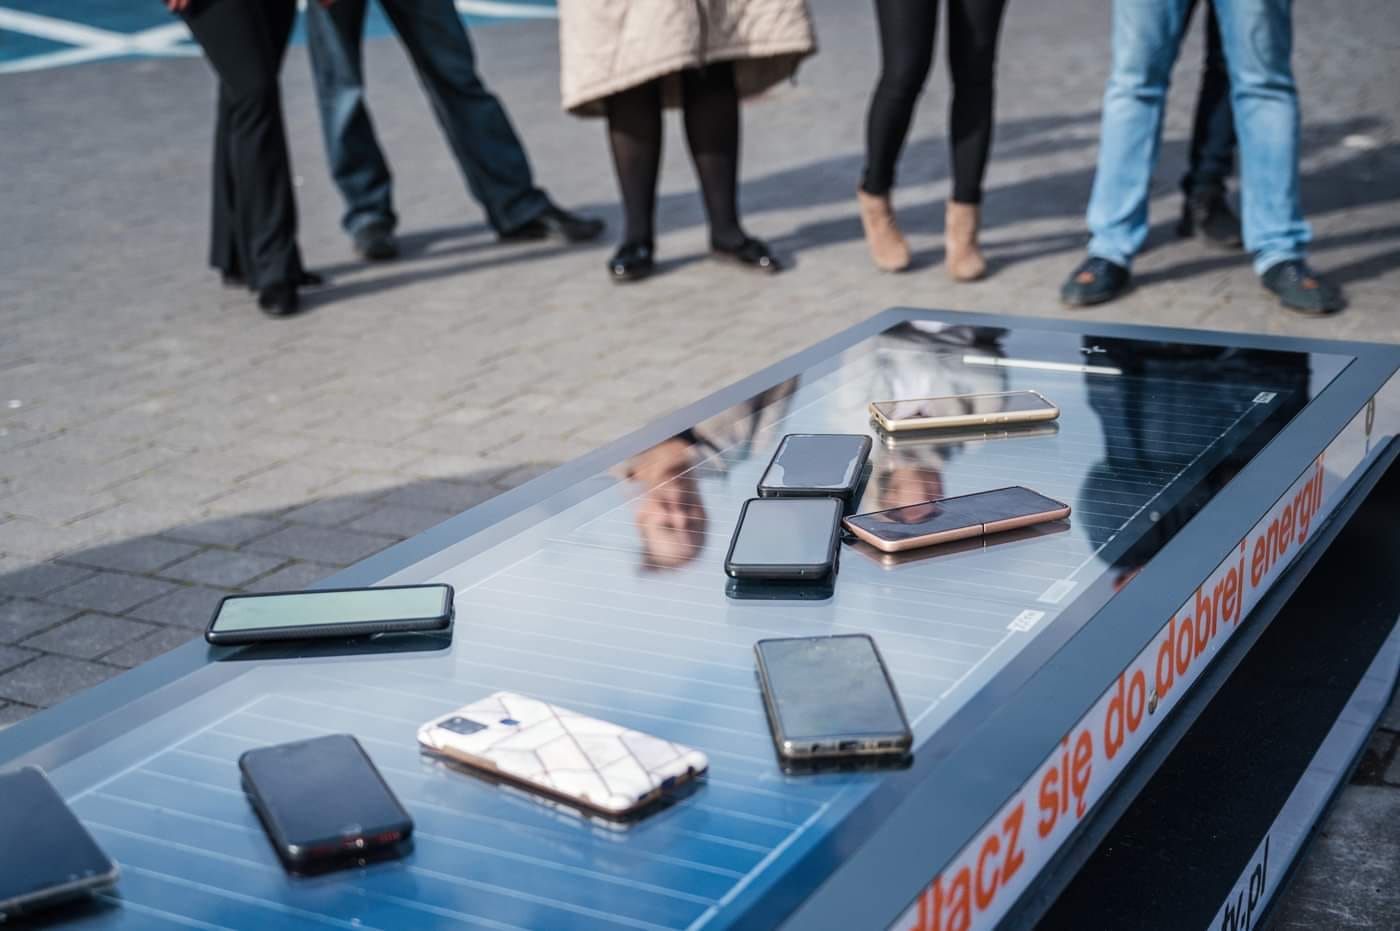 W Lublinie stanęła specjalna ławka solarna. Można na niej naładować telefon lub tablet (zdjęcia)